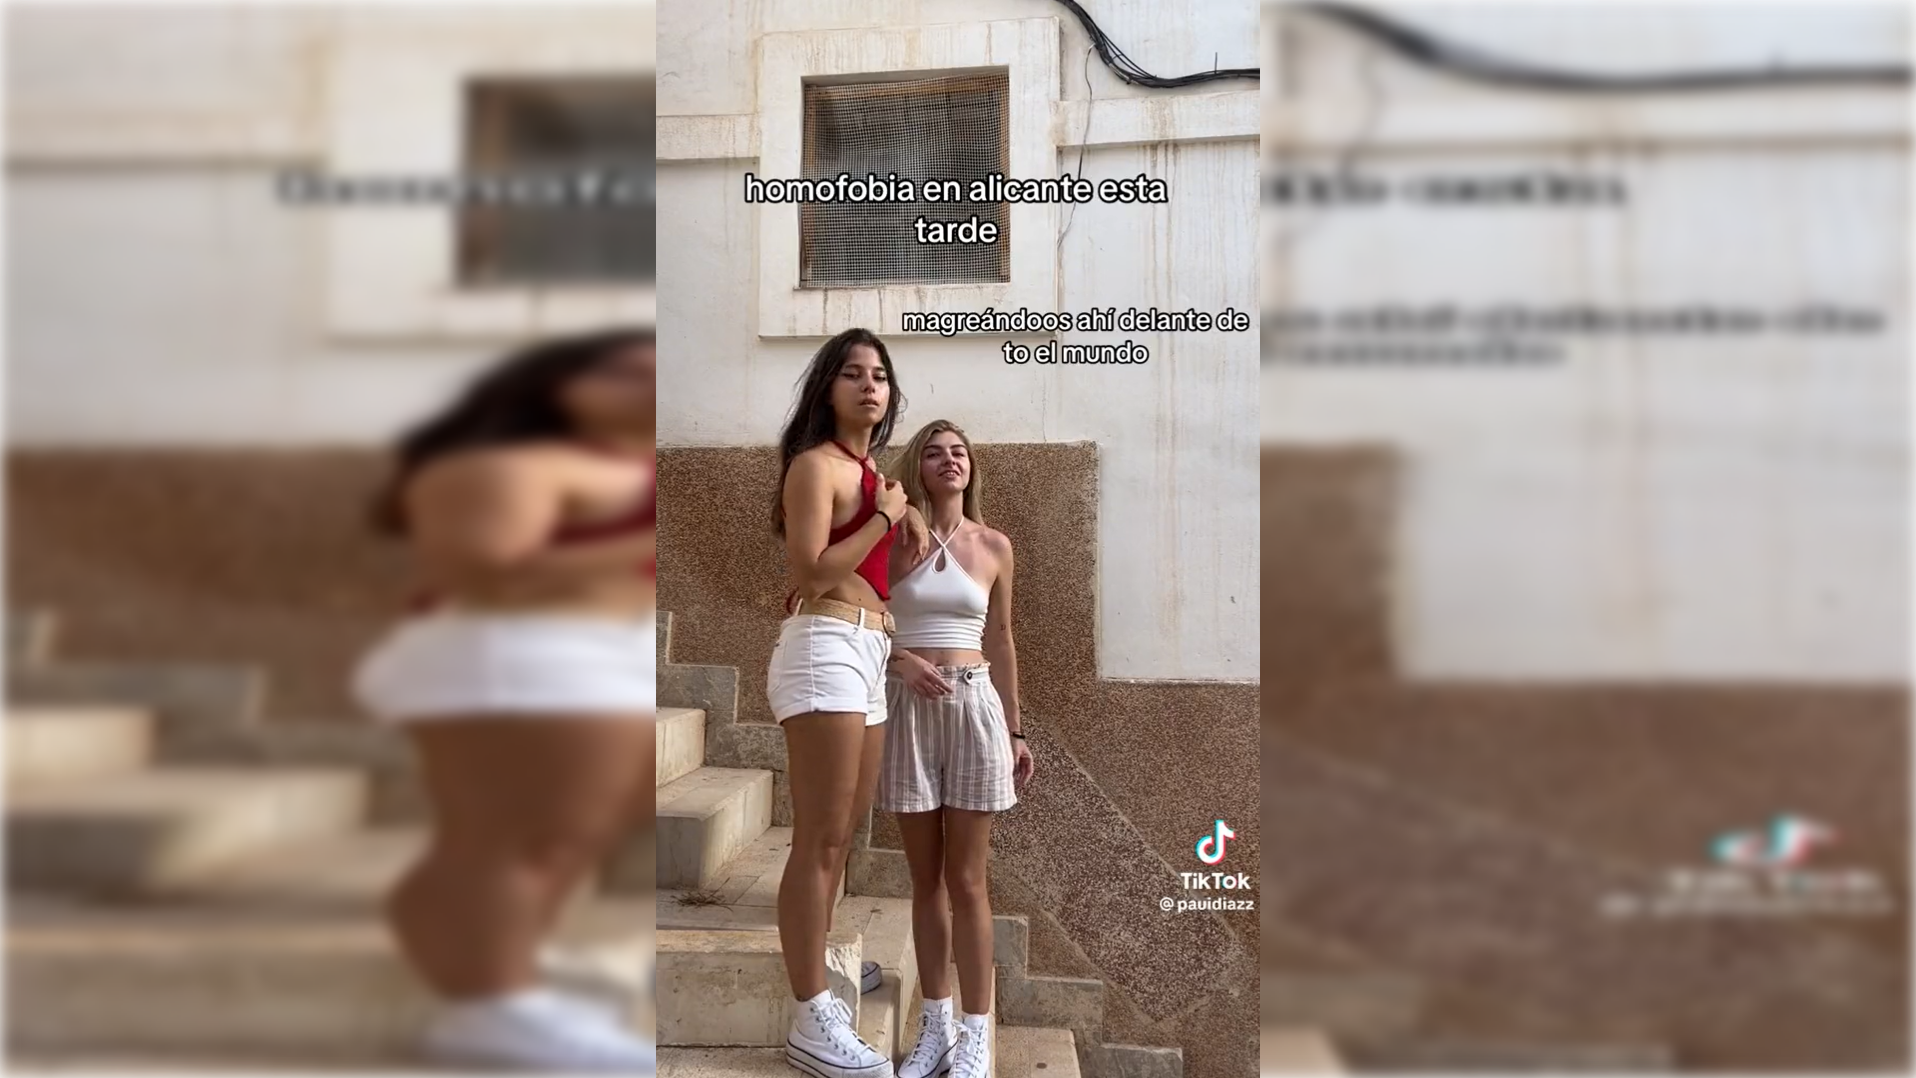 Dos jóvenes sufren un ataque homófobo en Alicante.